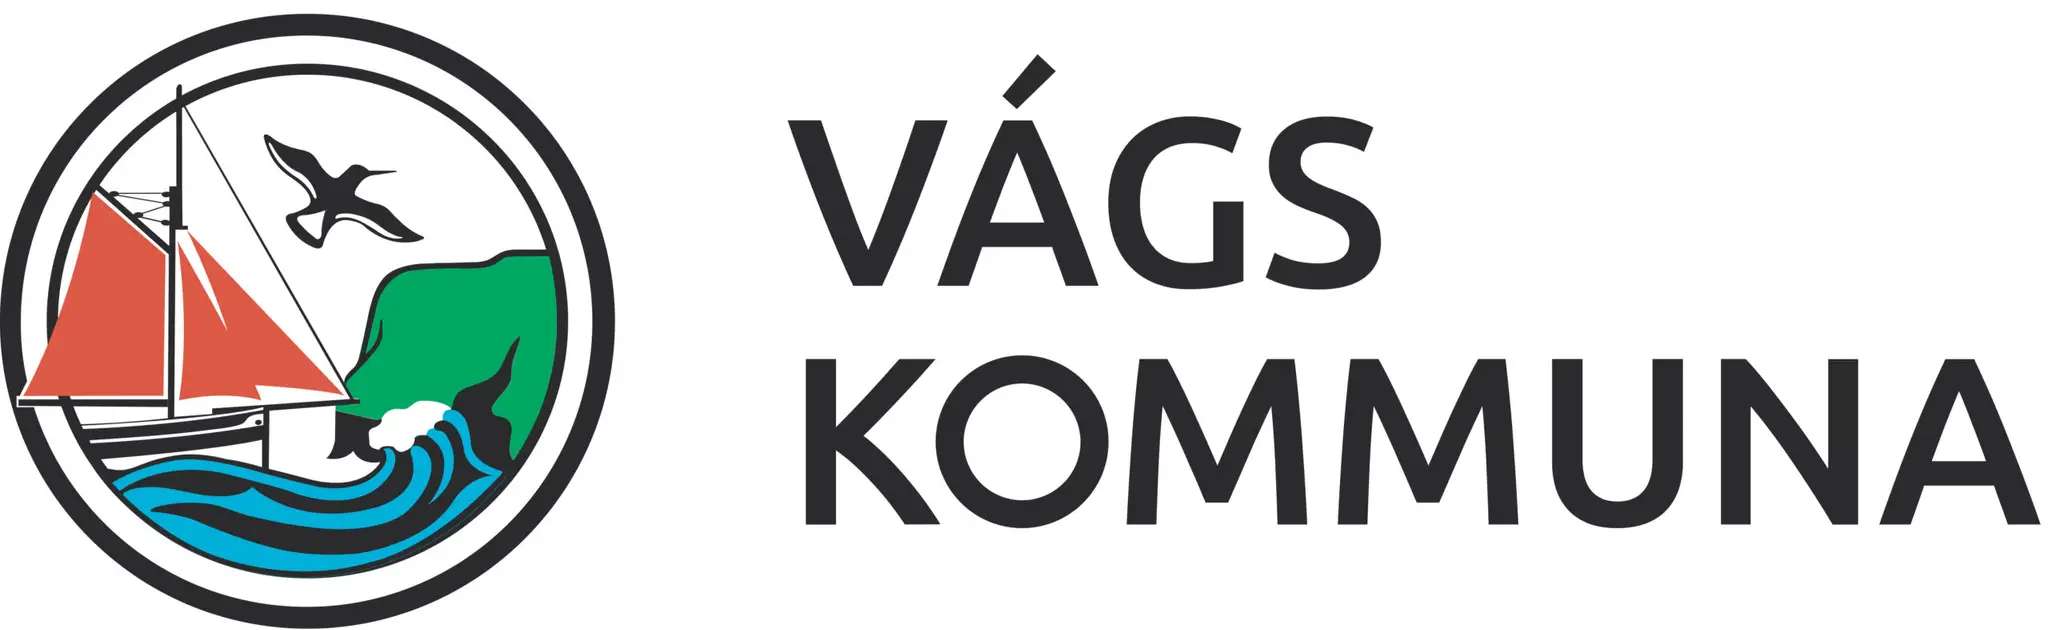 Logo_Vagskommuna-01-scaled